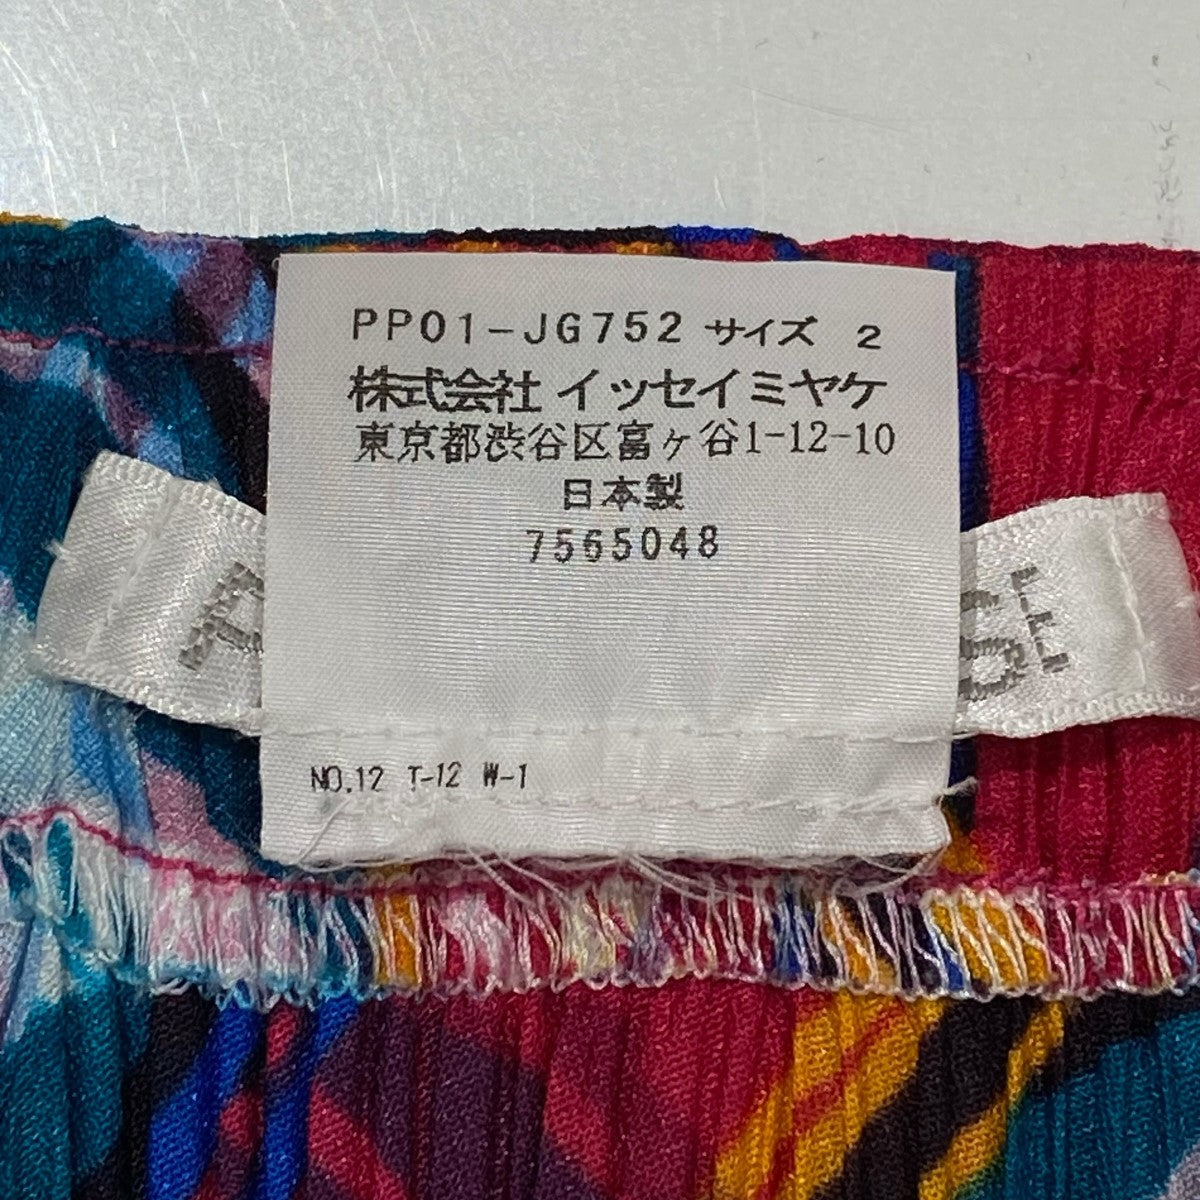 PLEATS PLEASE(プリーツプリーズ) プリーツスカート PP01-JG752 マルチ 